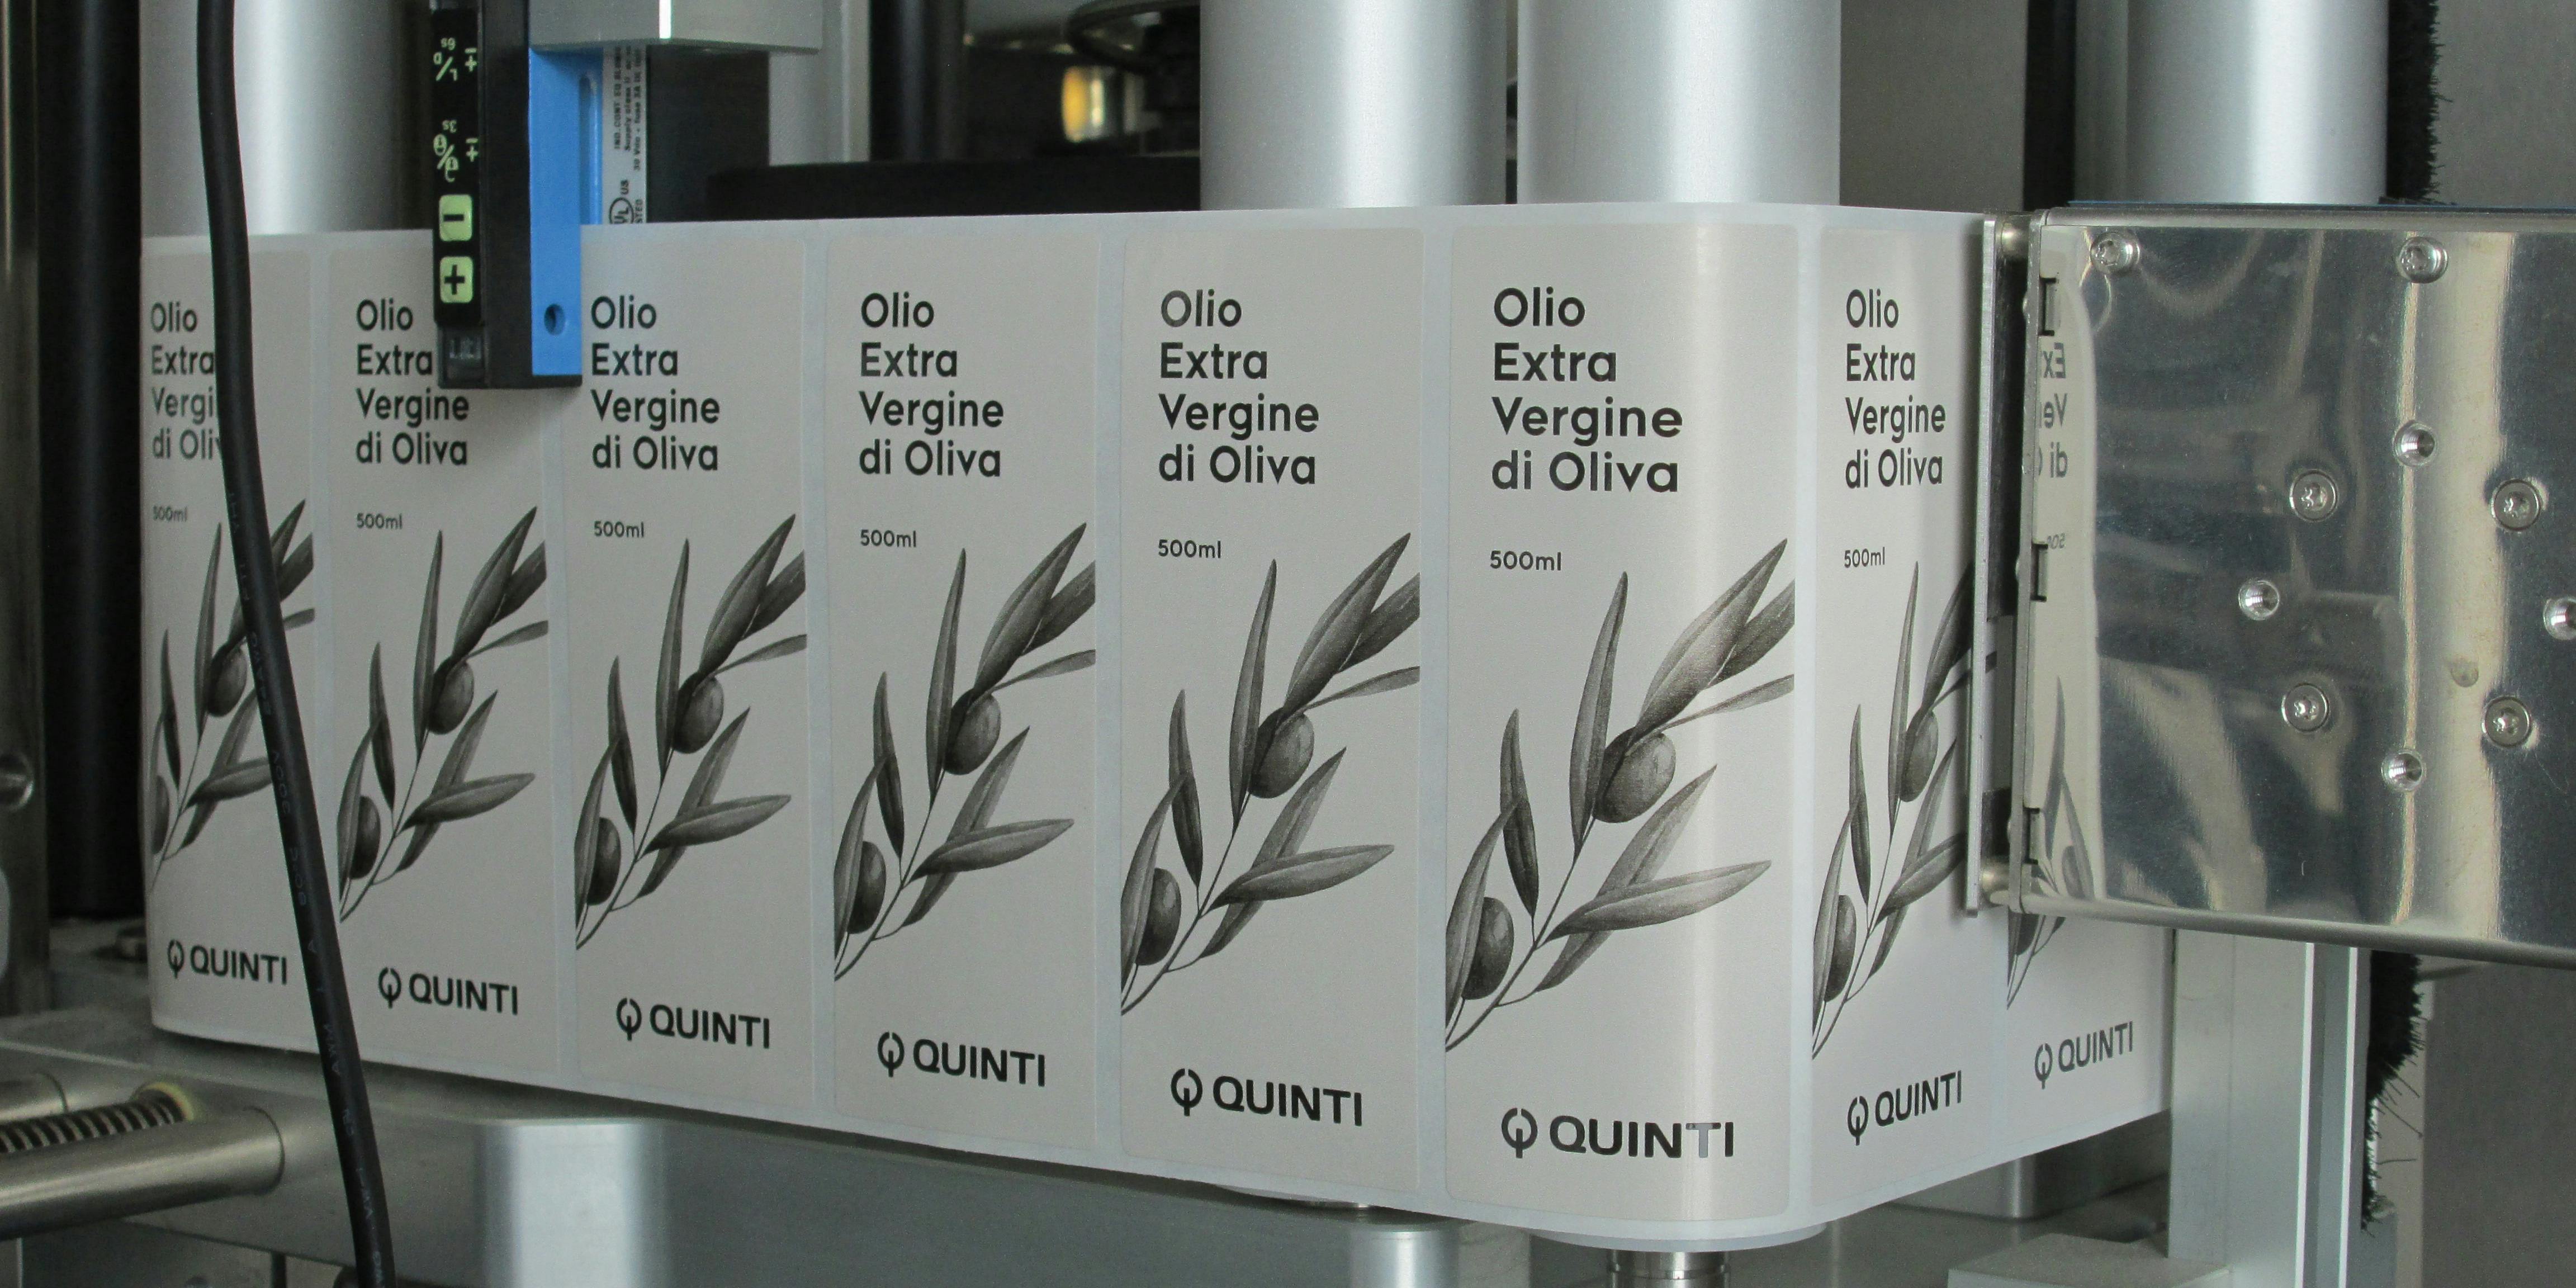 Dettaglio della macchina dove si vede etichettte rettangolari su bobina, indicate per bottiglia olio, raffiguranti ramo olivo e logo Quinti